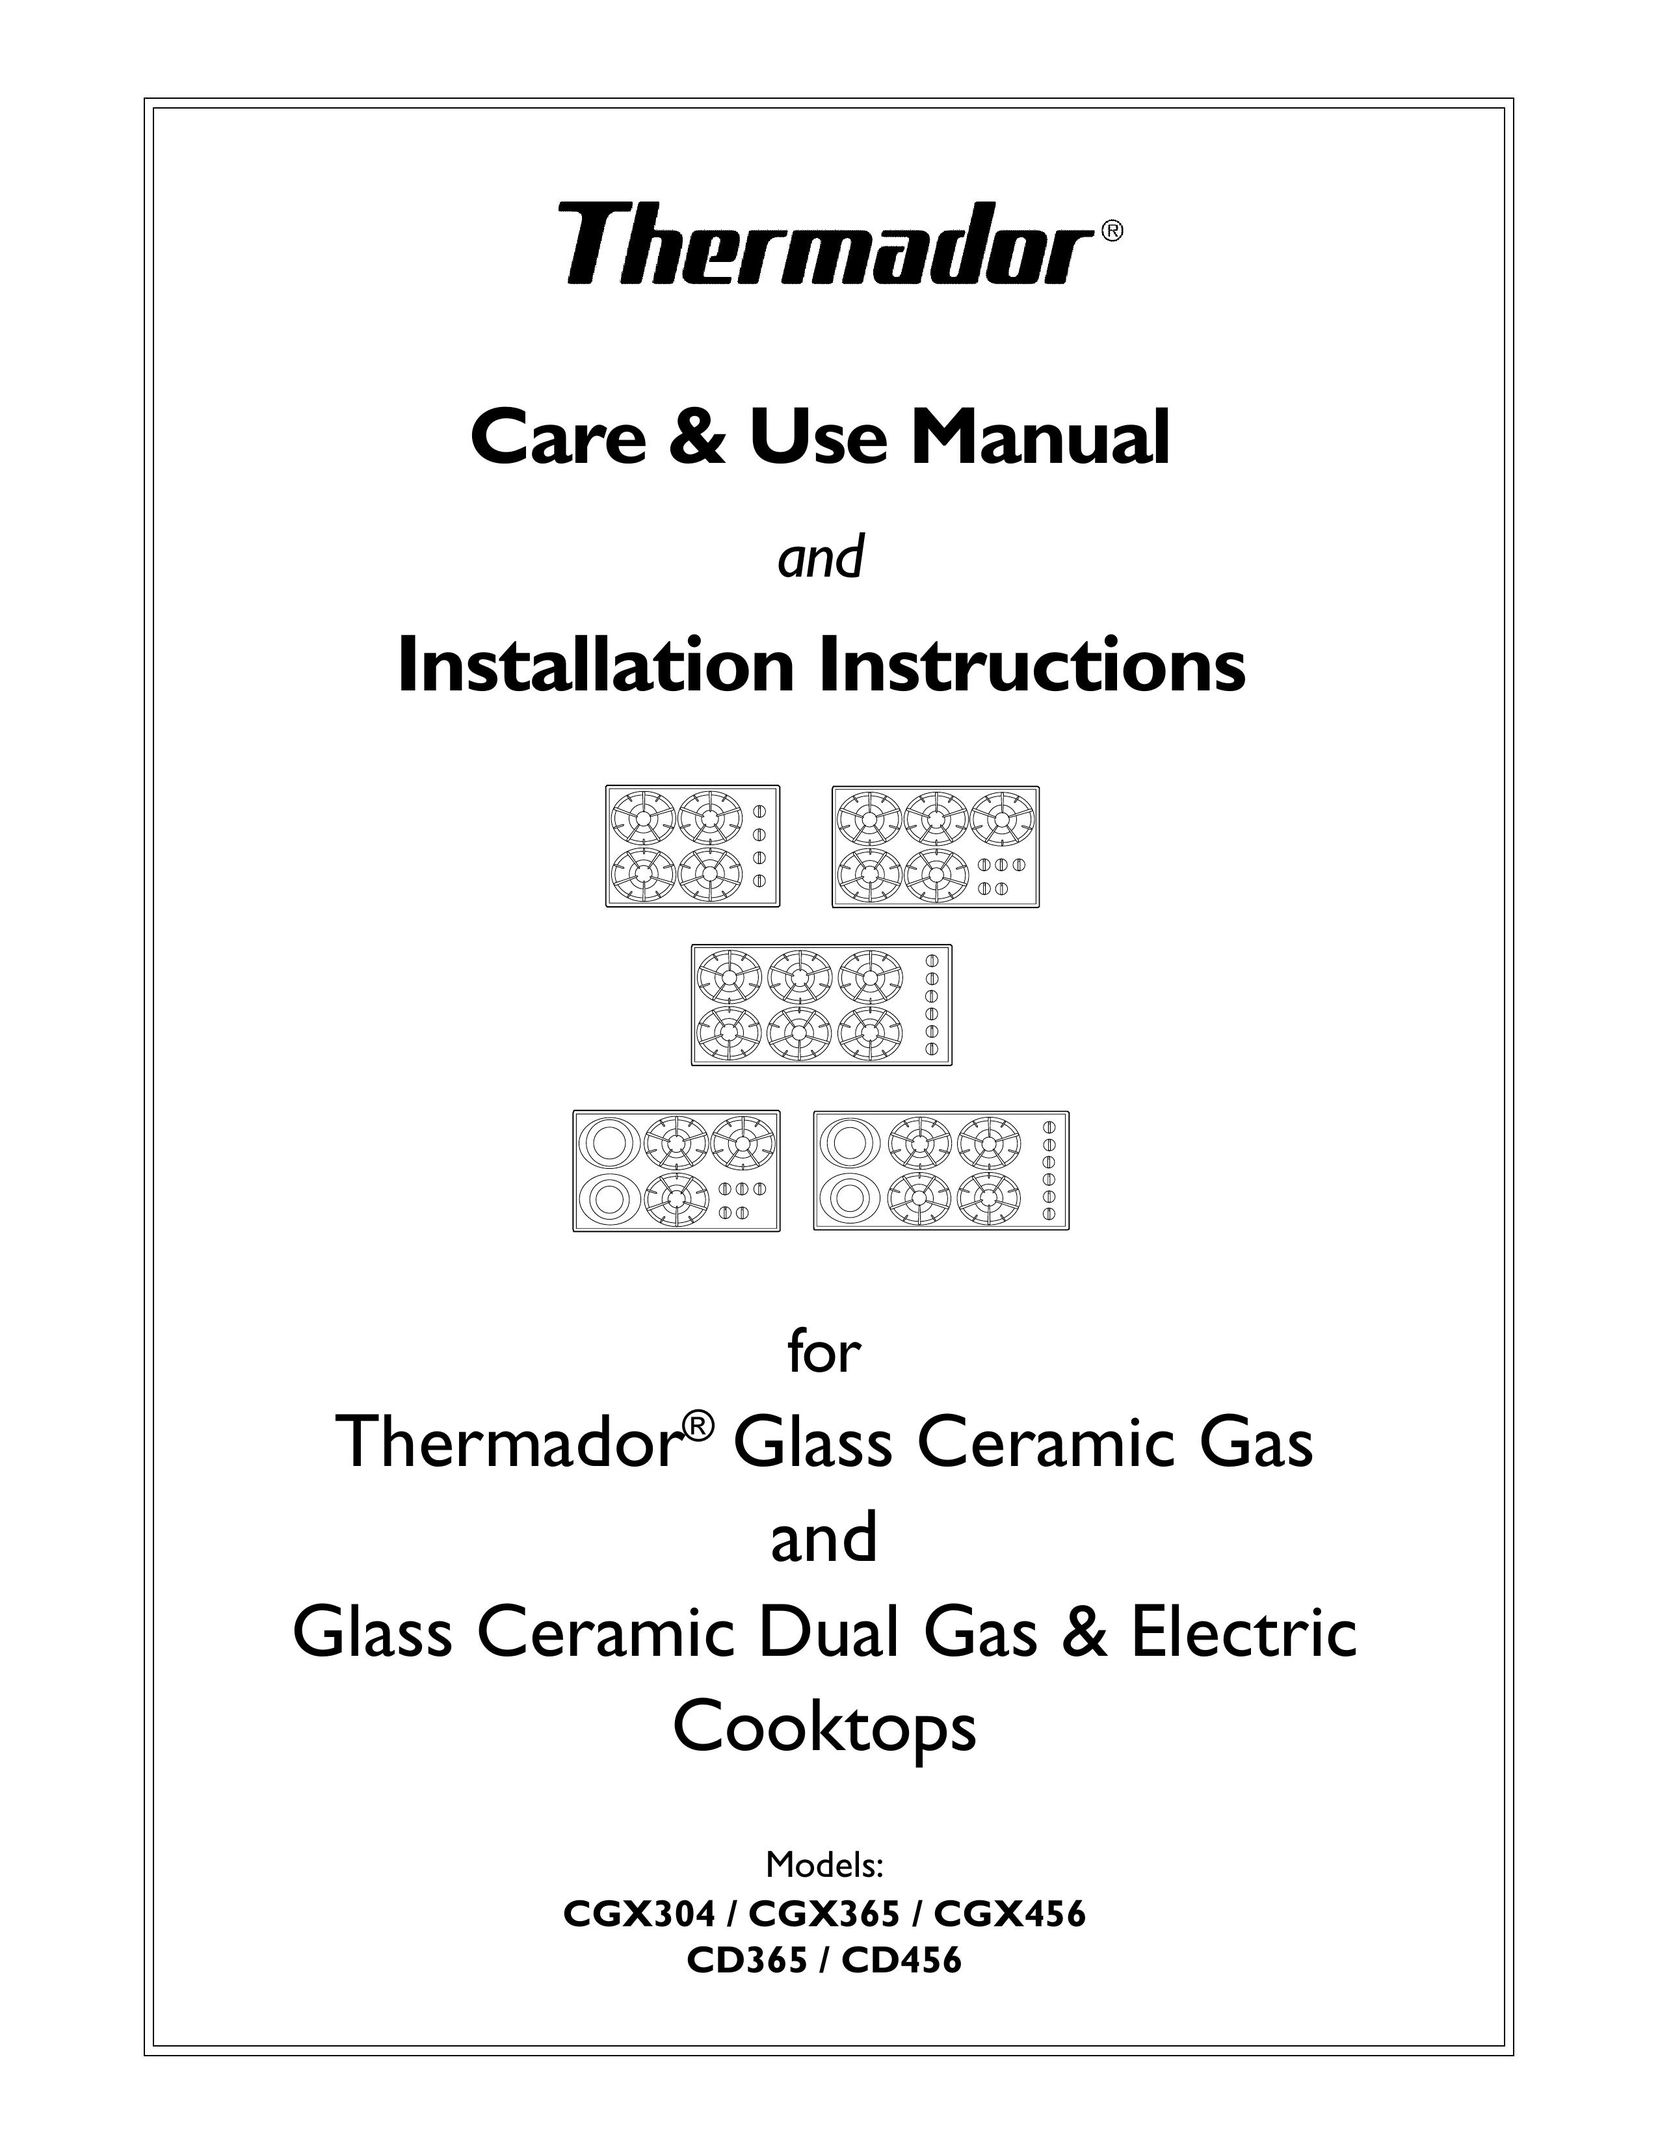 Thermador CGX456 Cooktop User Manual